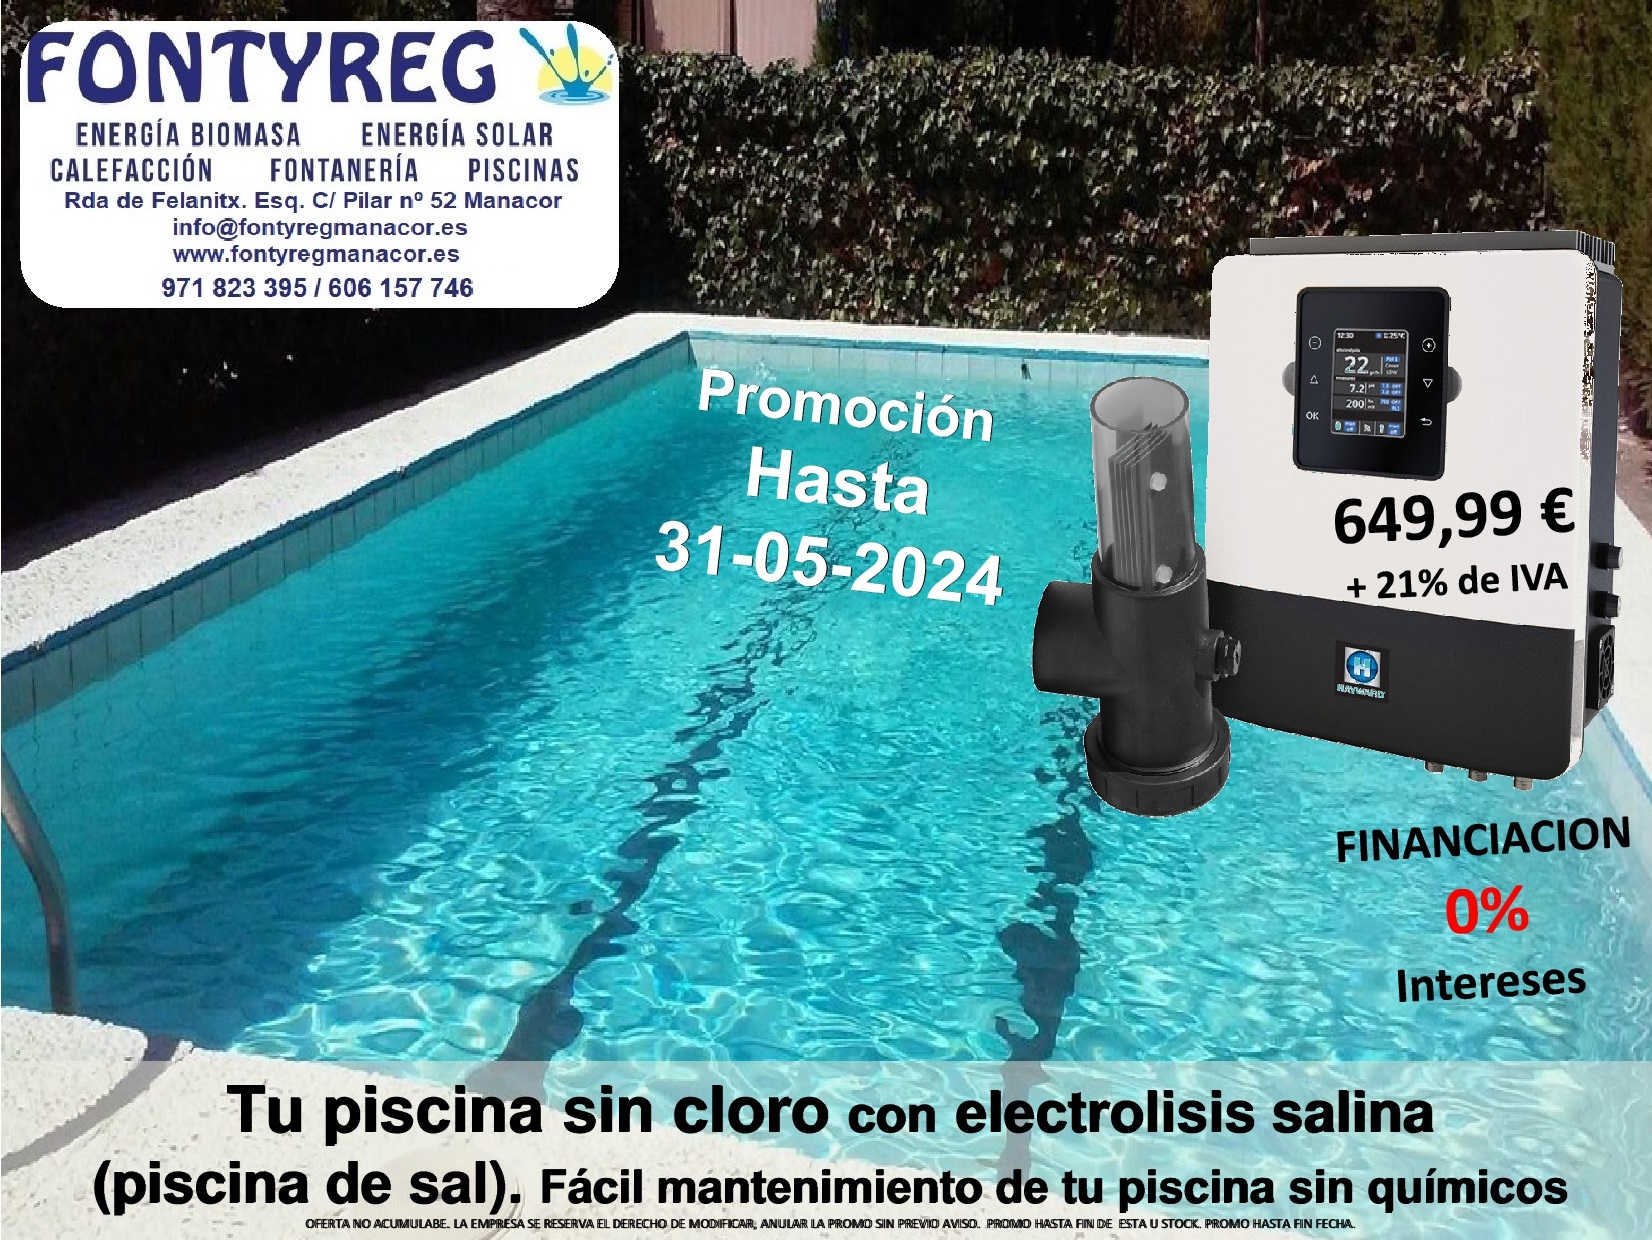 Electrólisis salina Manacor-Mallorca, piscina de sal, bomba dosificadora ph liquido,